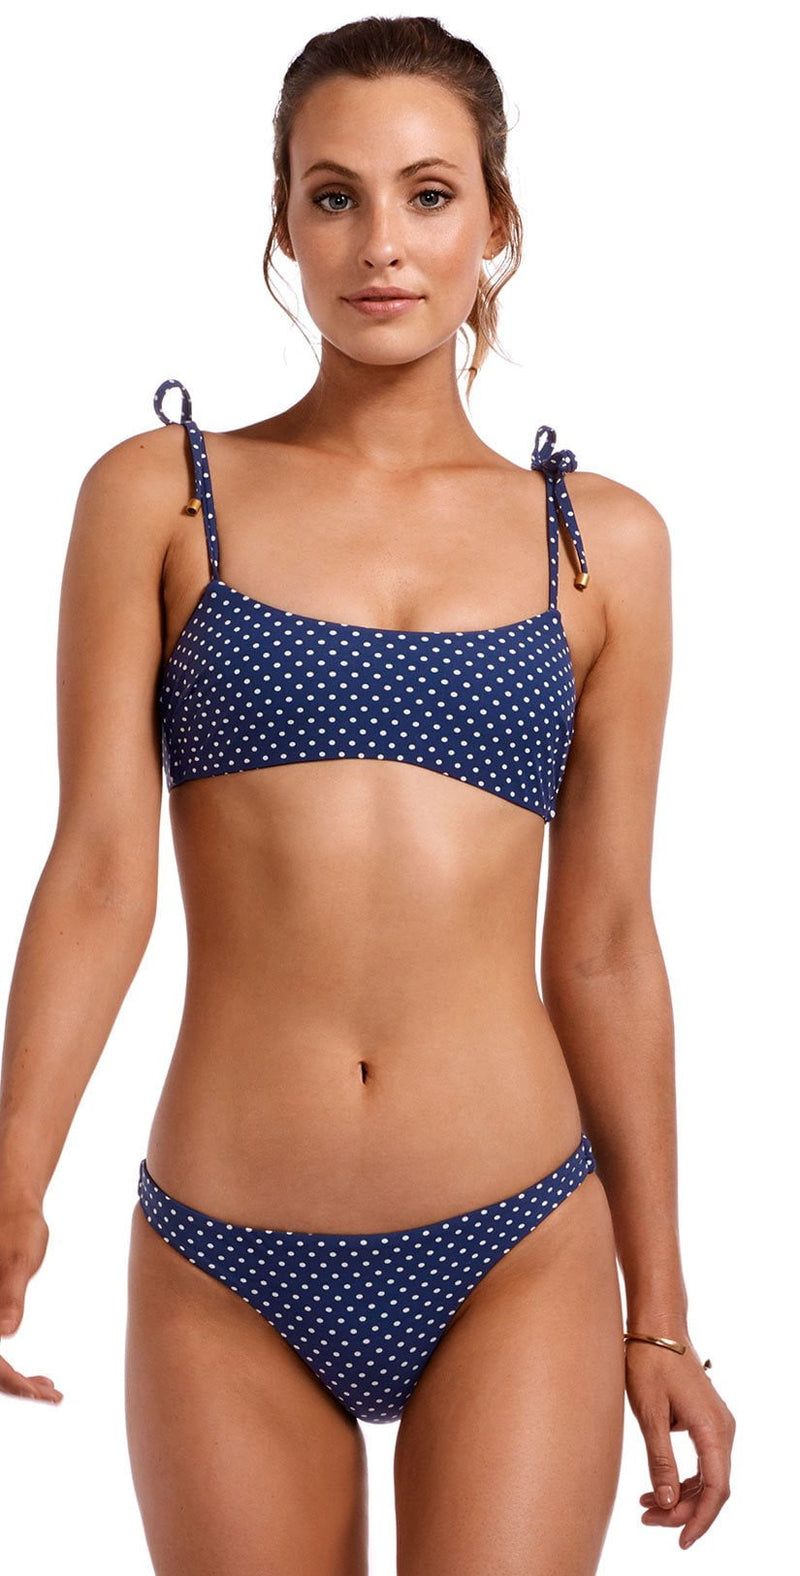 Vitamin A Rumba Dots Bella Bikini Top in Deep Blue 908T RDB: